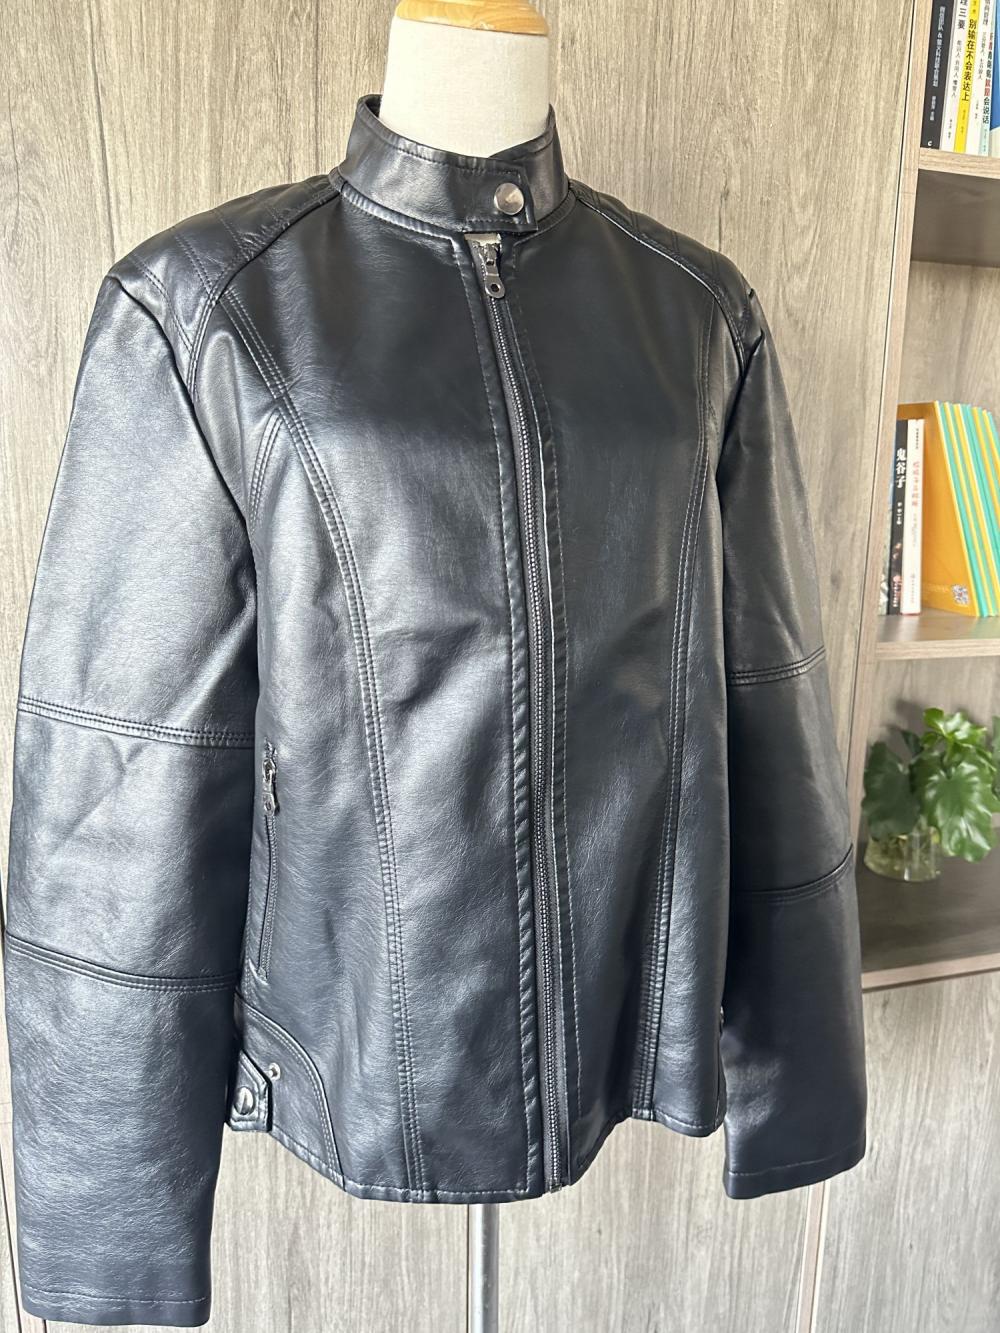 Leather jacket women sale